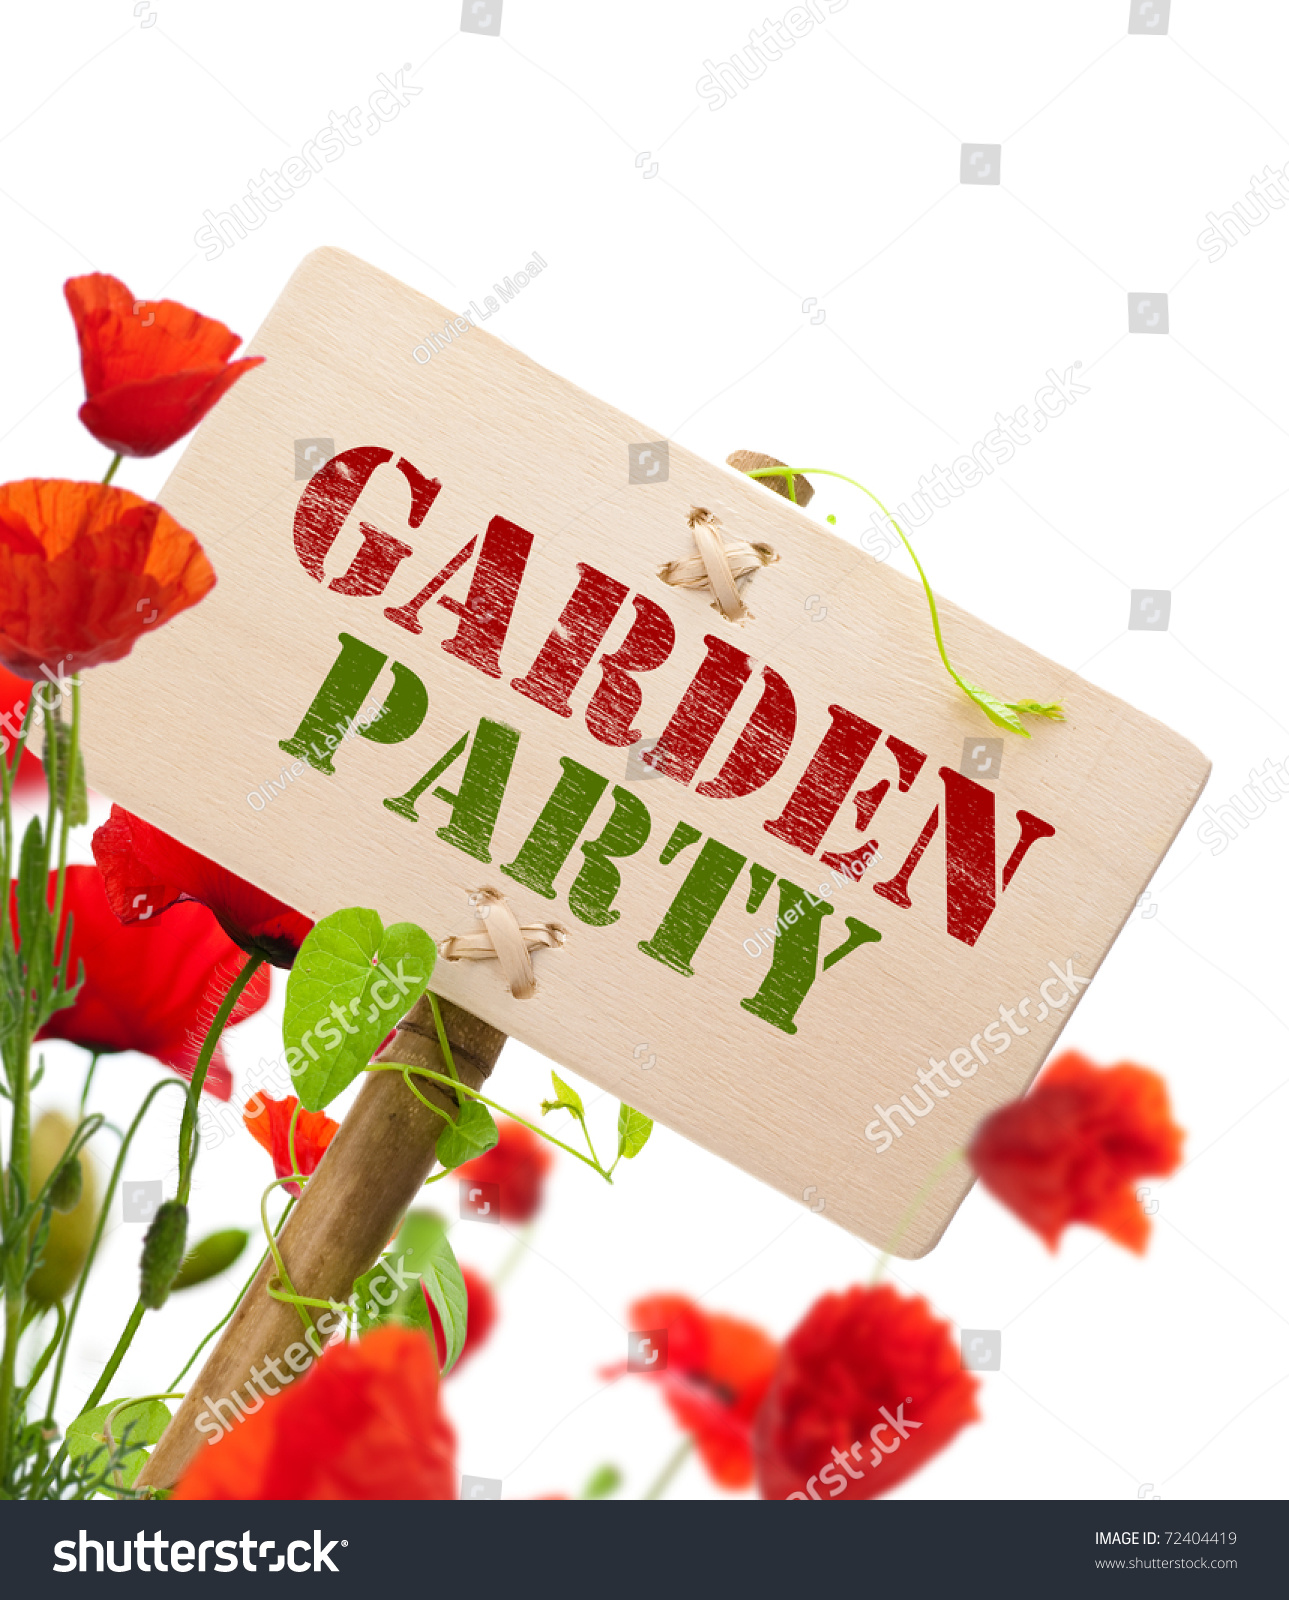 clipart garden party free - photo #9